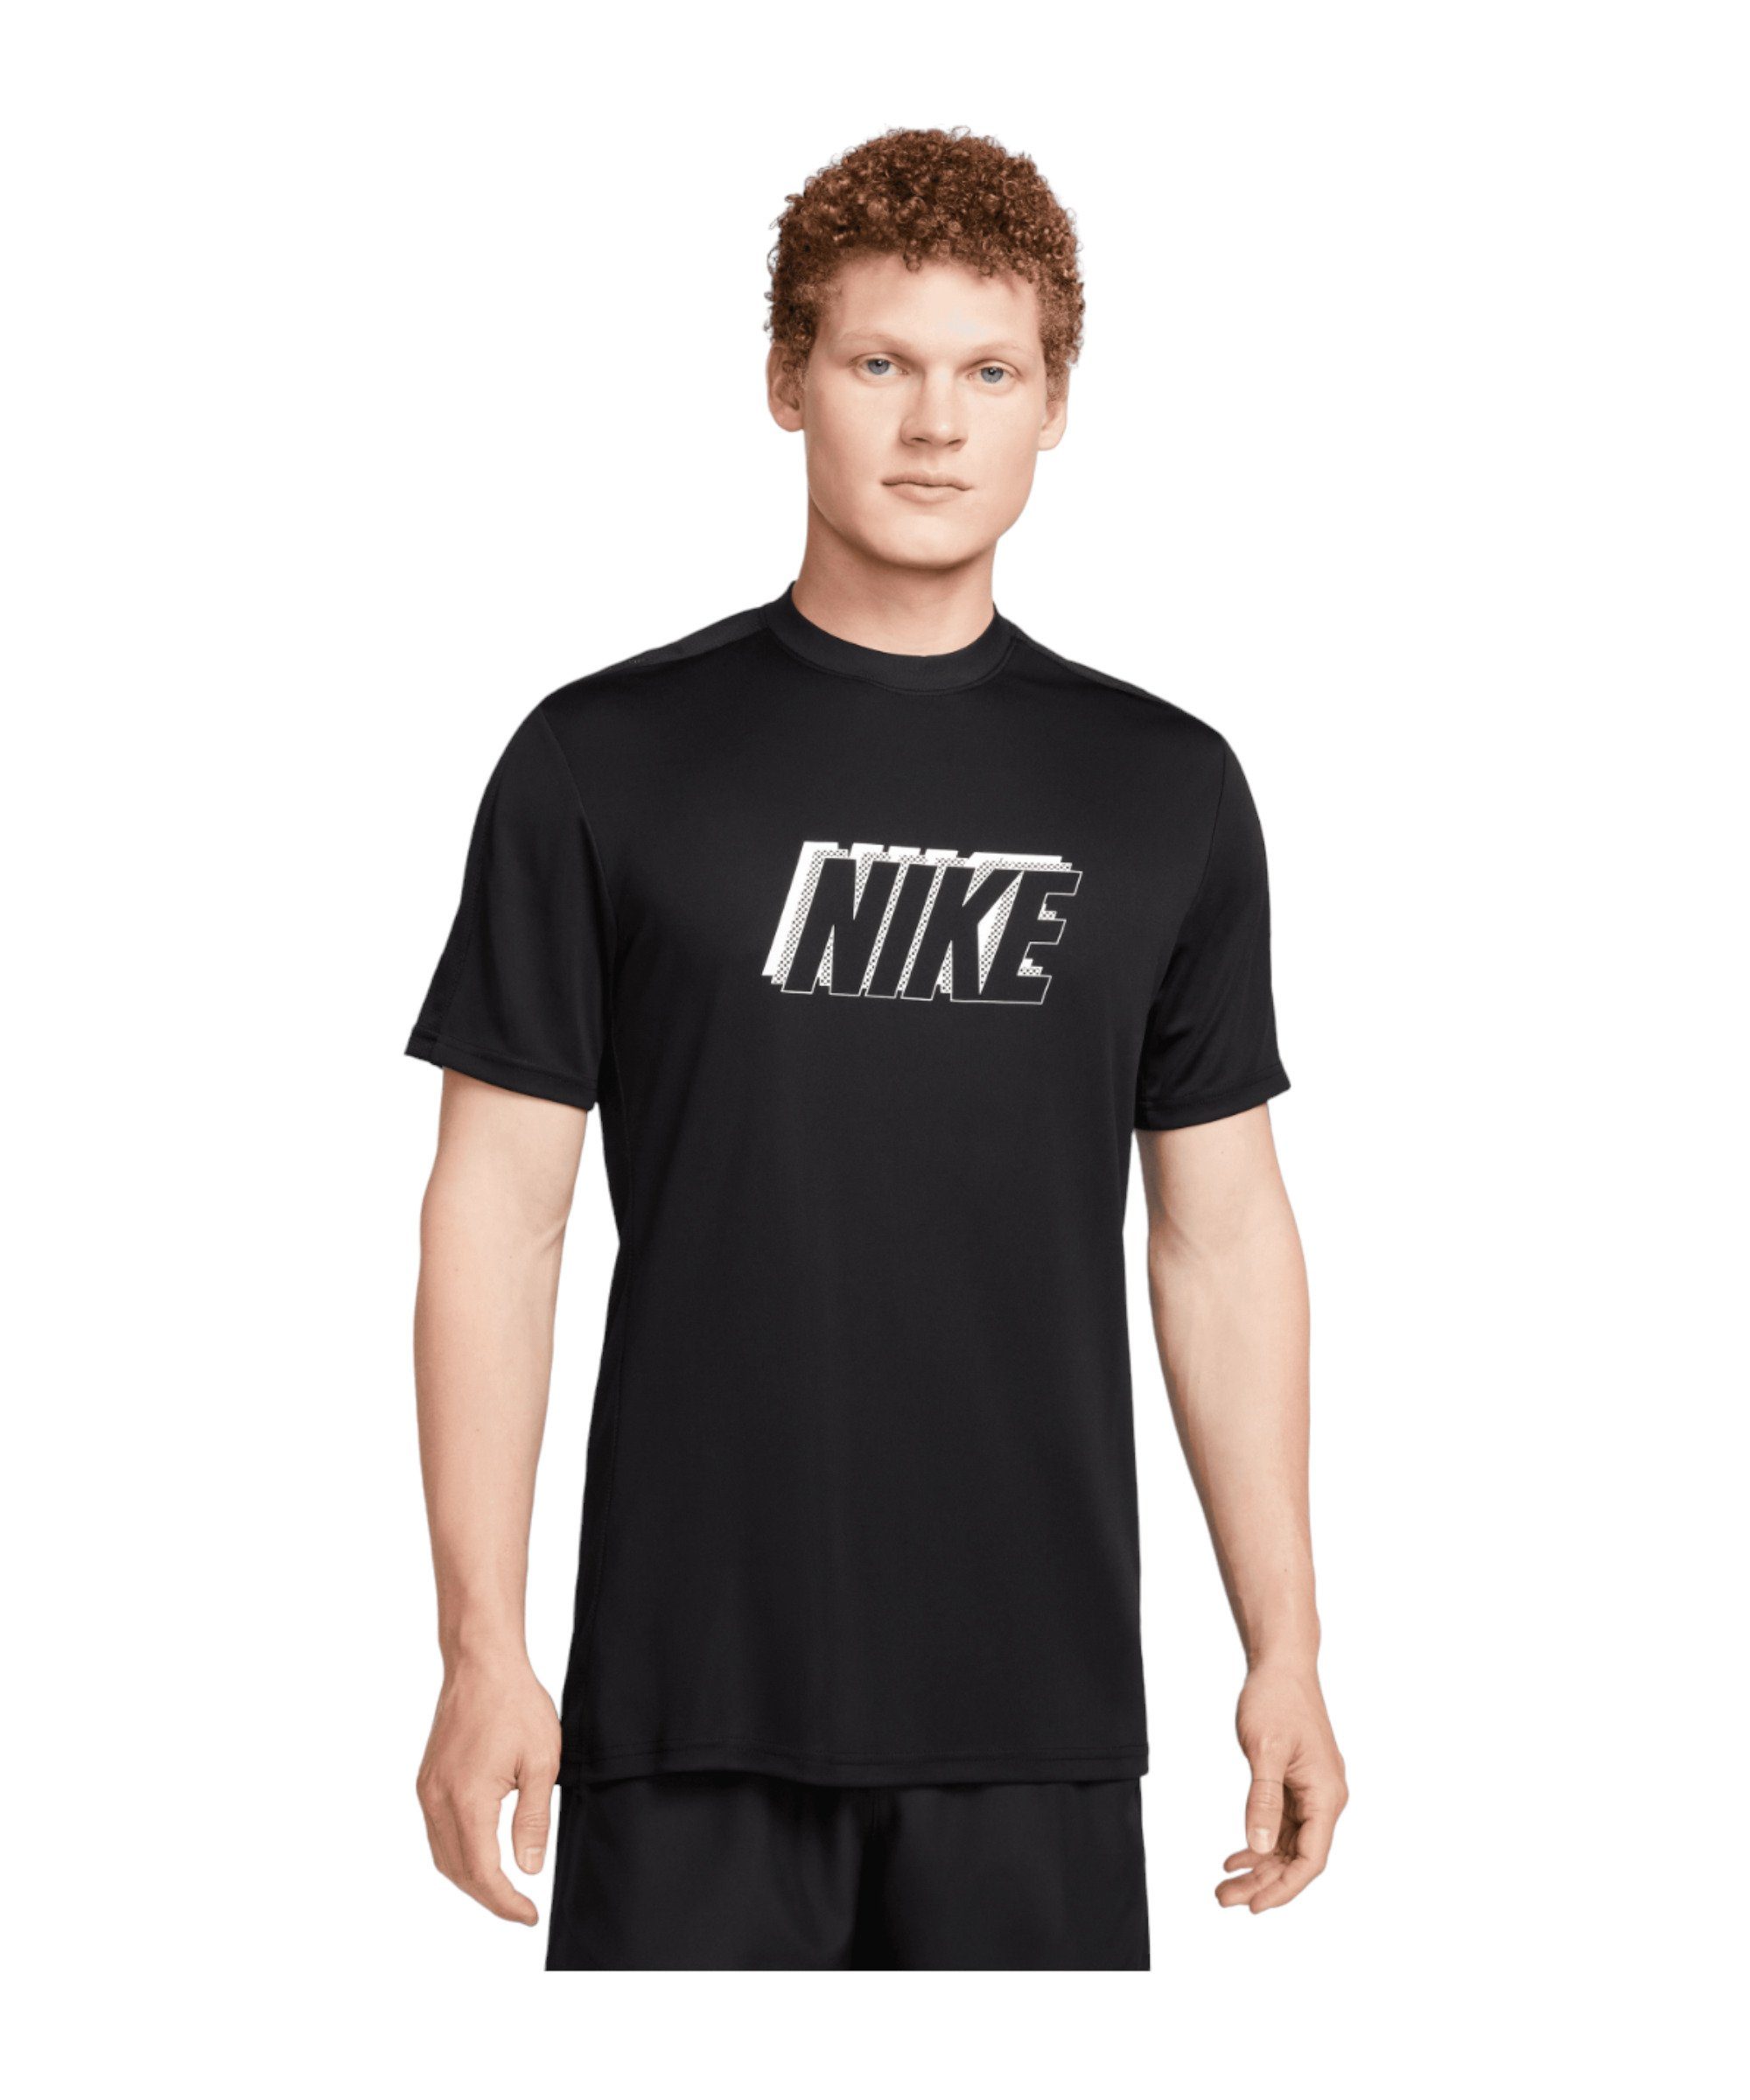 Logo Nike default schwarzschwarzschwarz 3D Academy T-Shirt T-Shirt